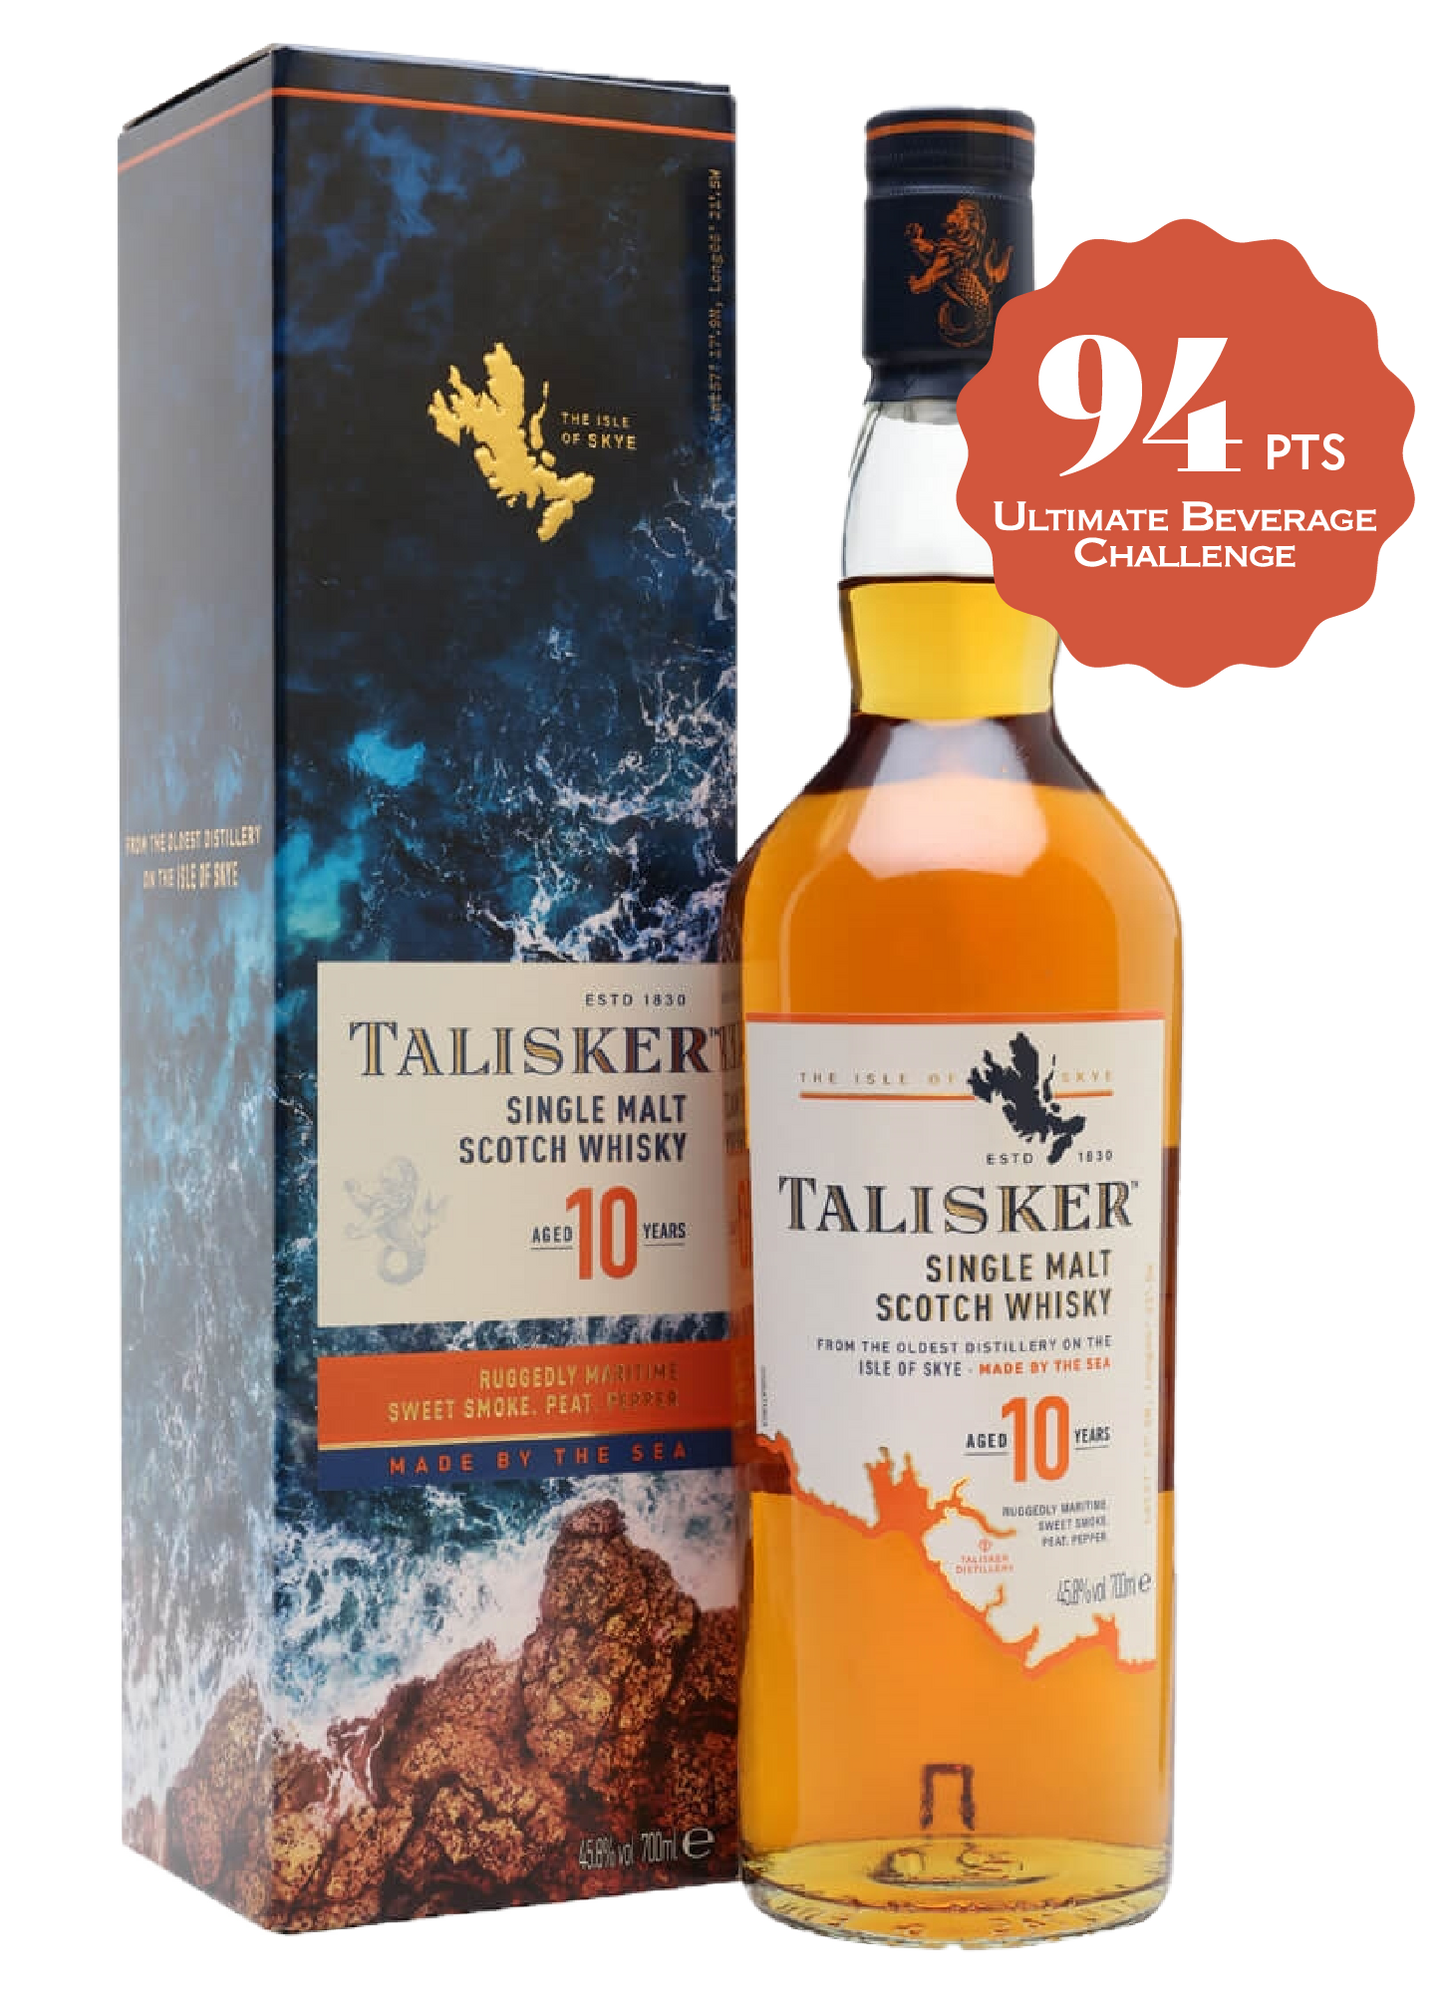 Talisker Scotch Single Malt 10 Year